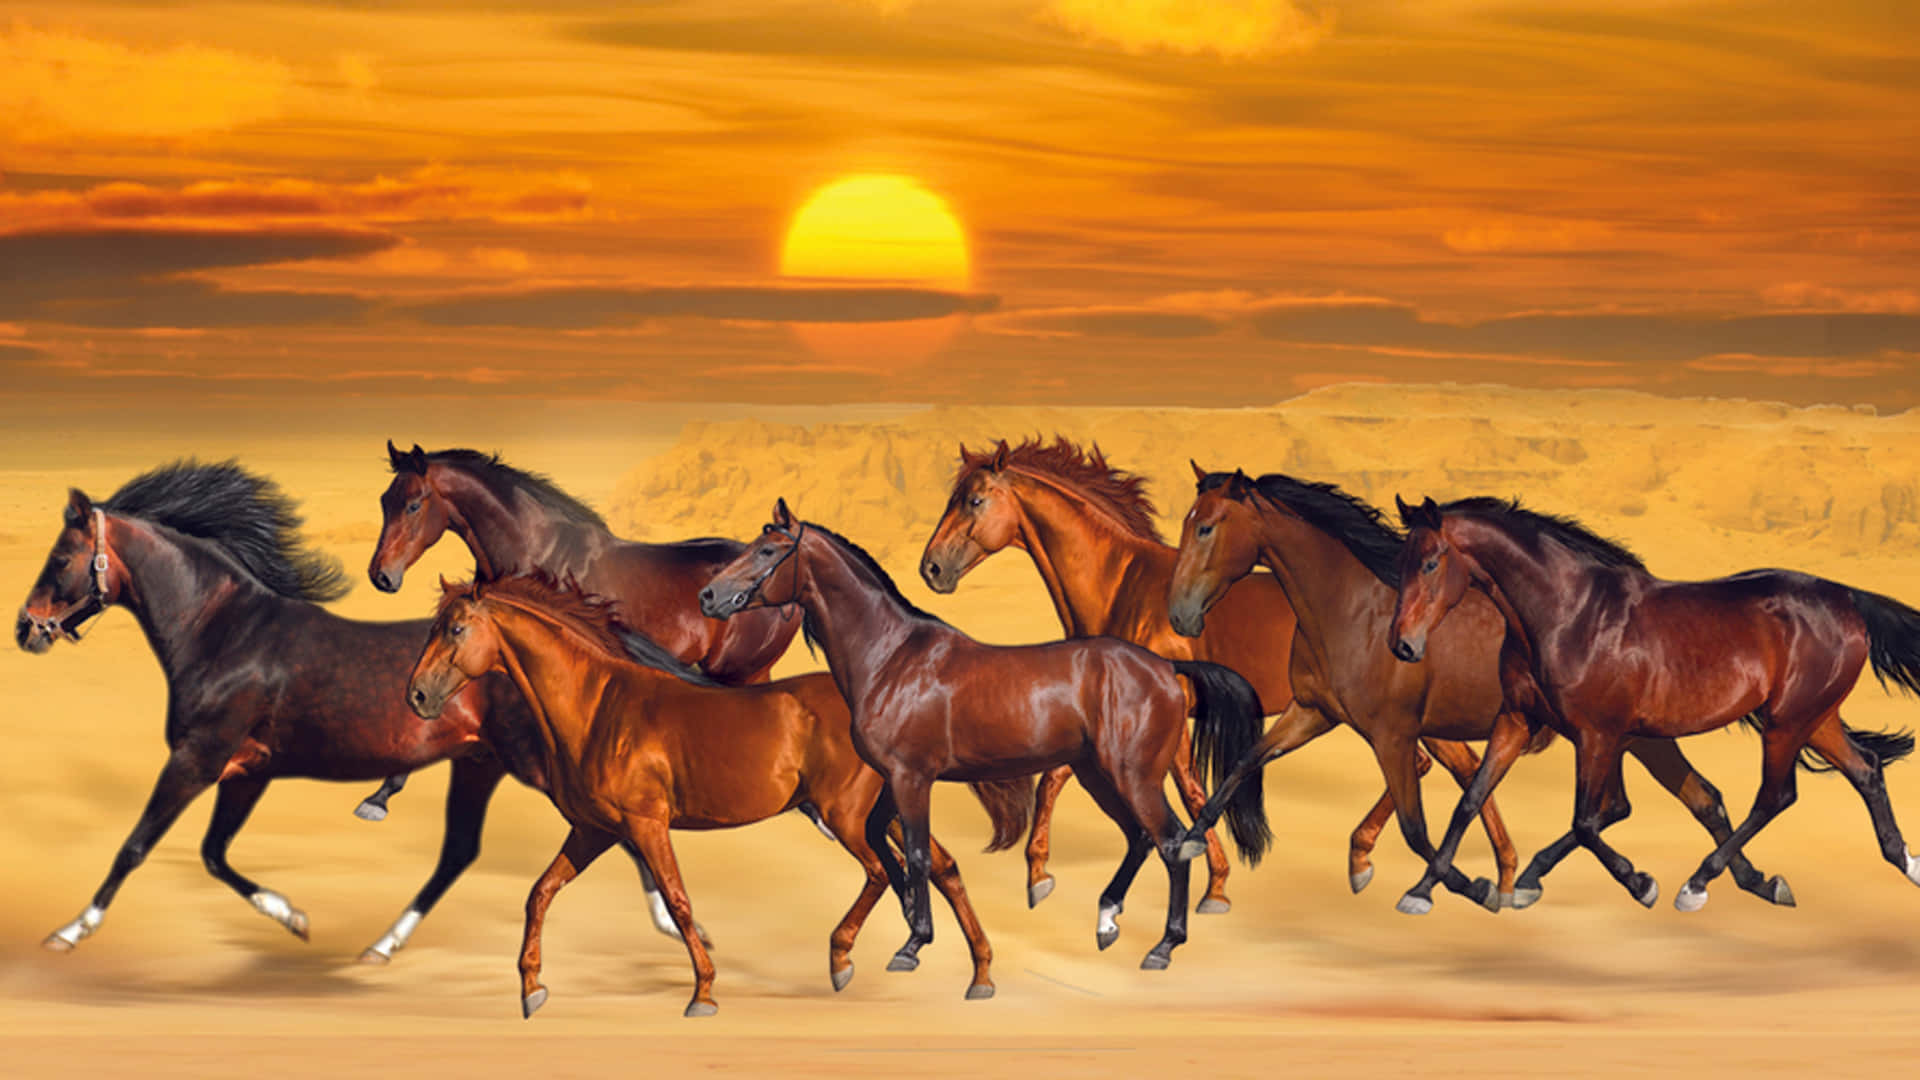 7braune Pferde, Die Auf Sand Laufen Wallpaper